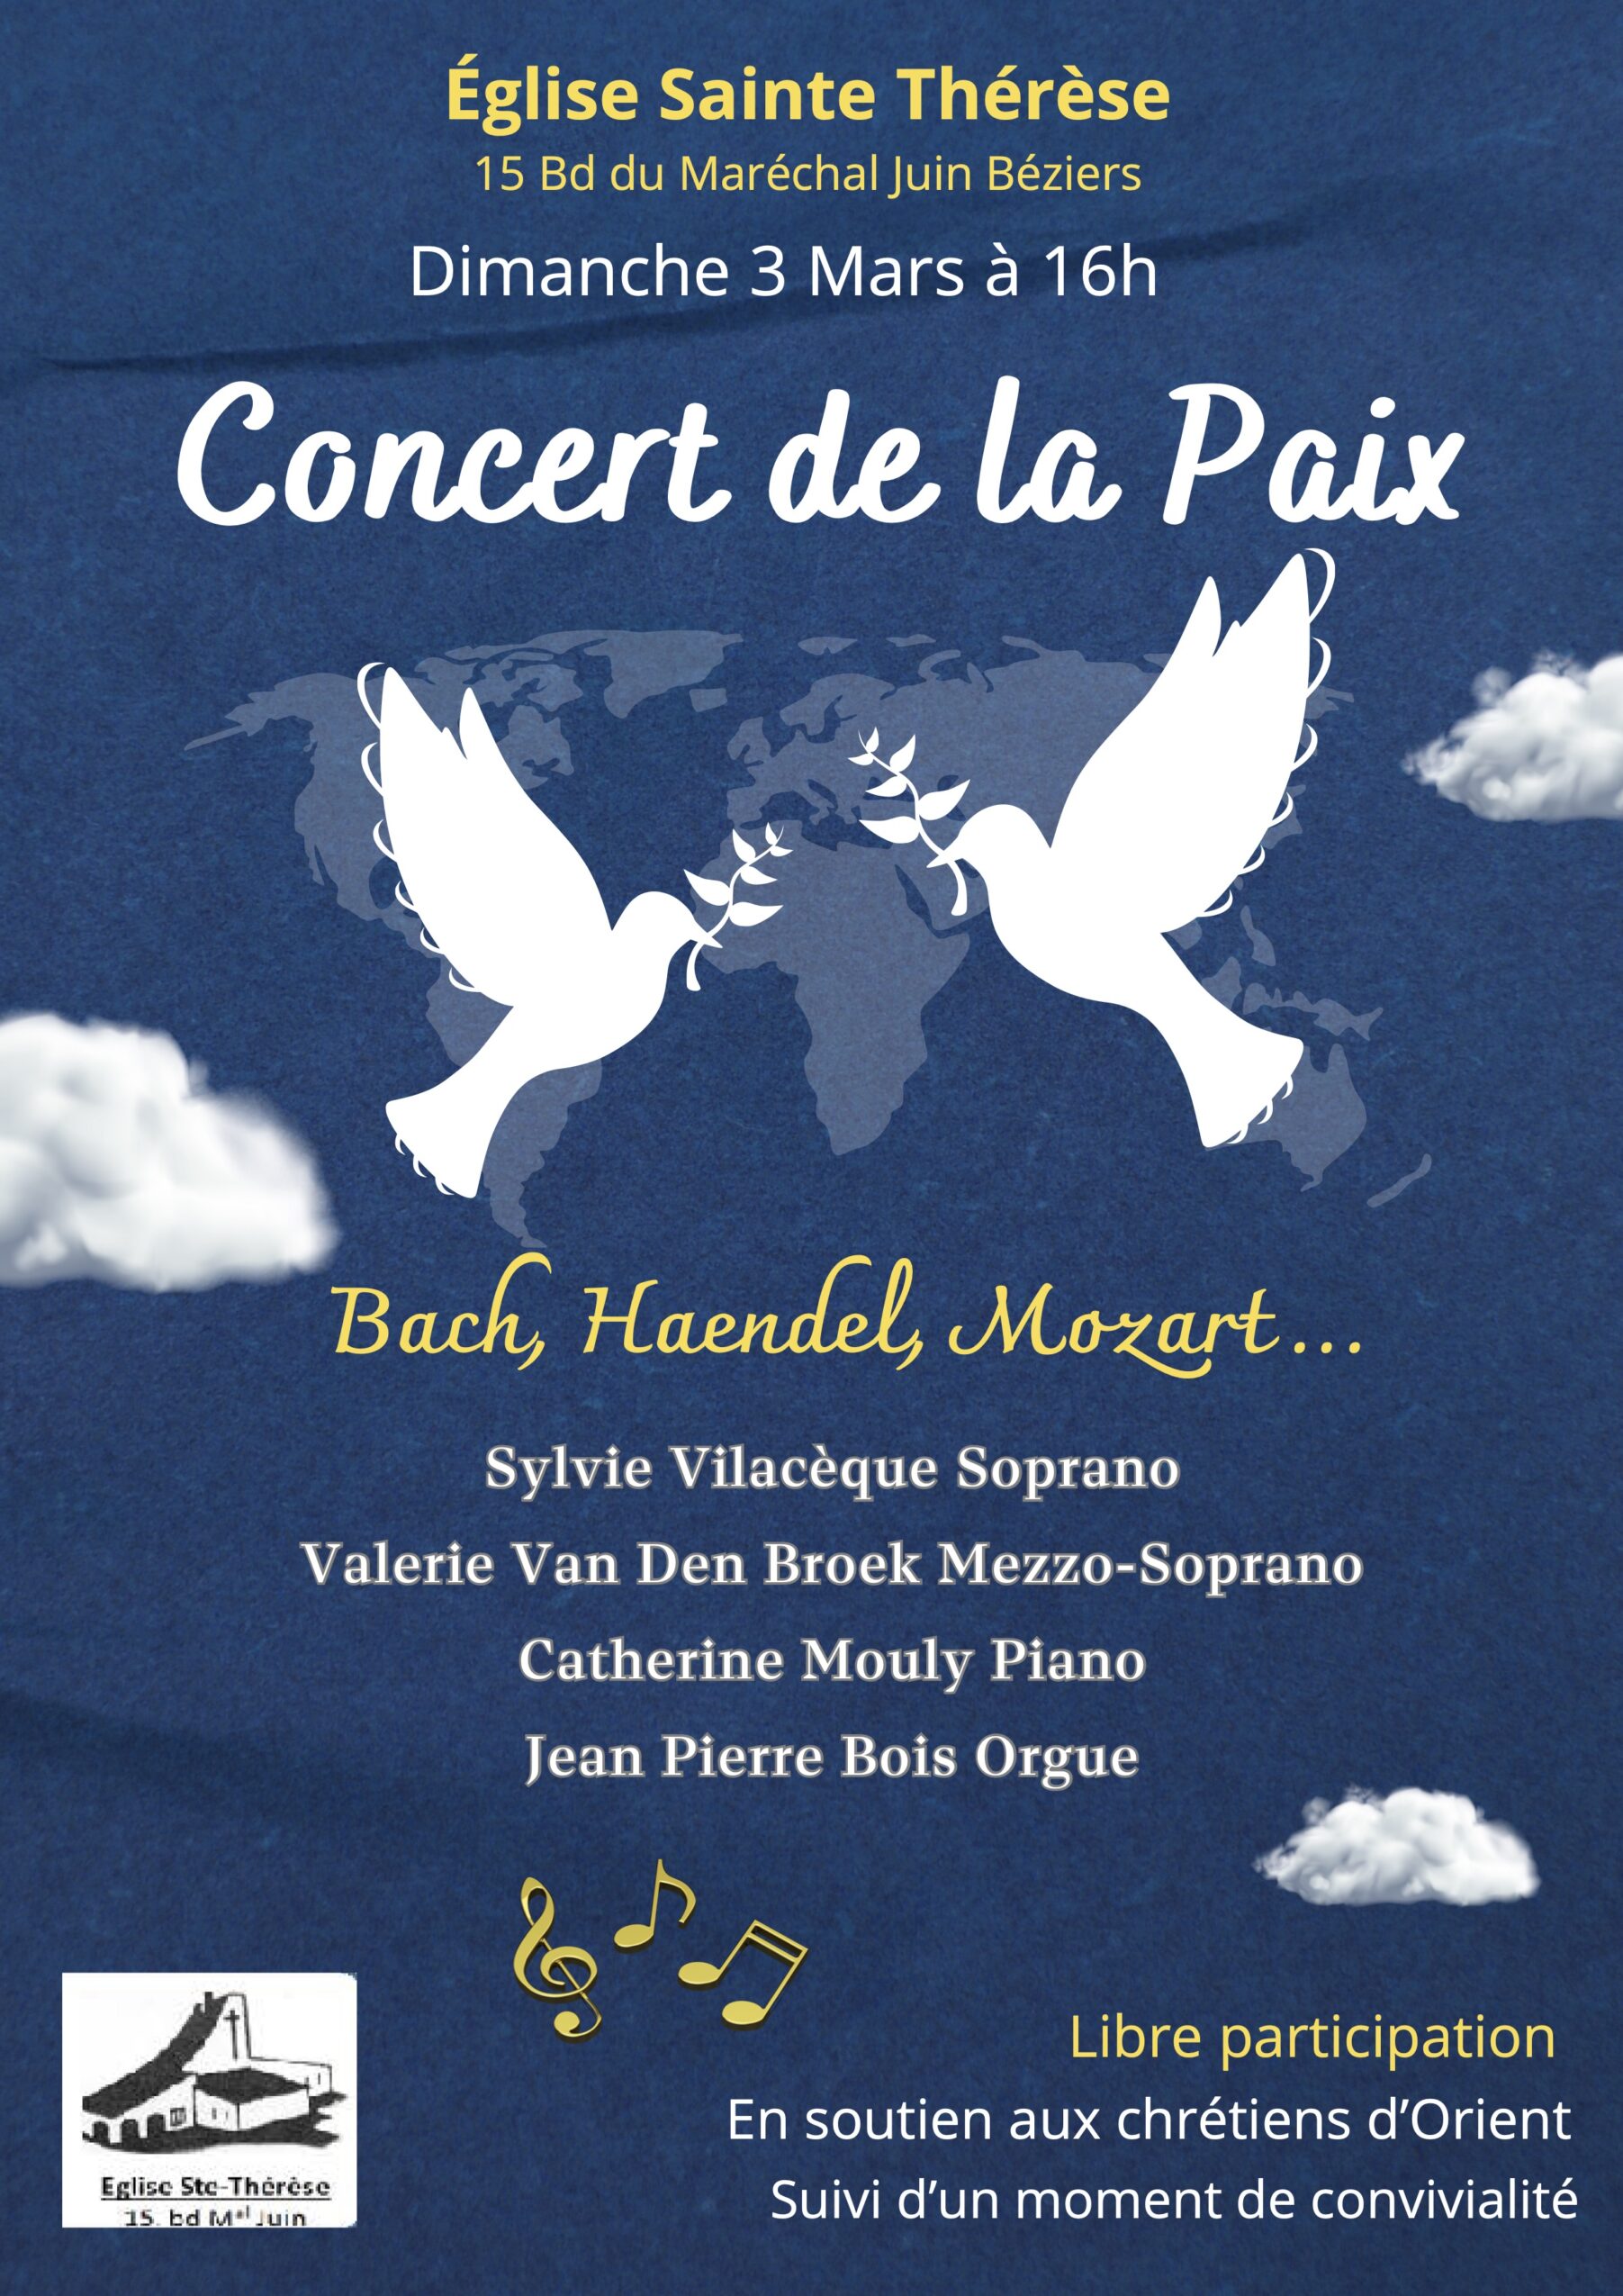 Concert de la paix (42 x 59.4 cm) 3 copie